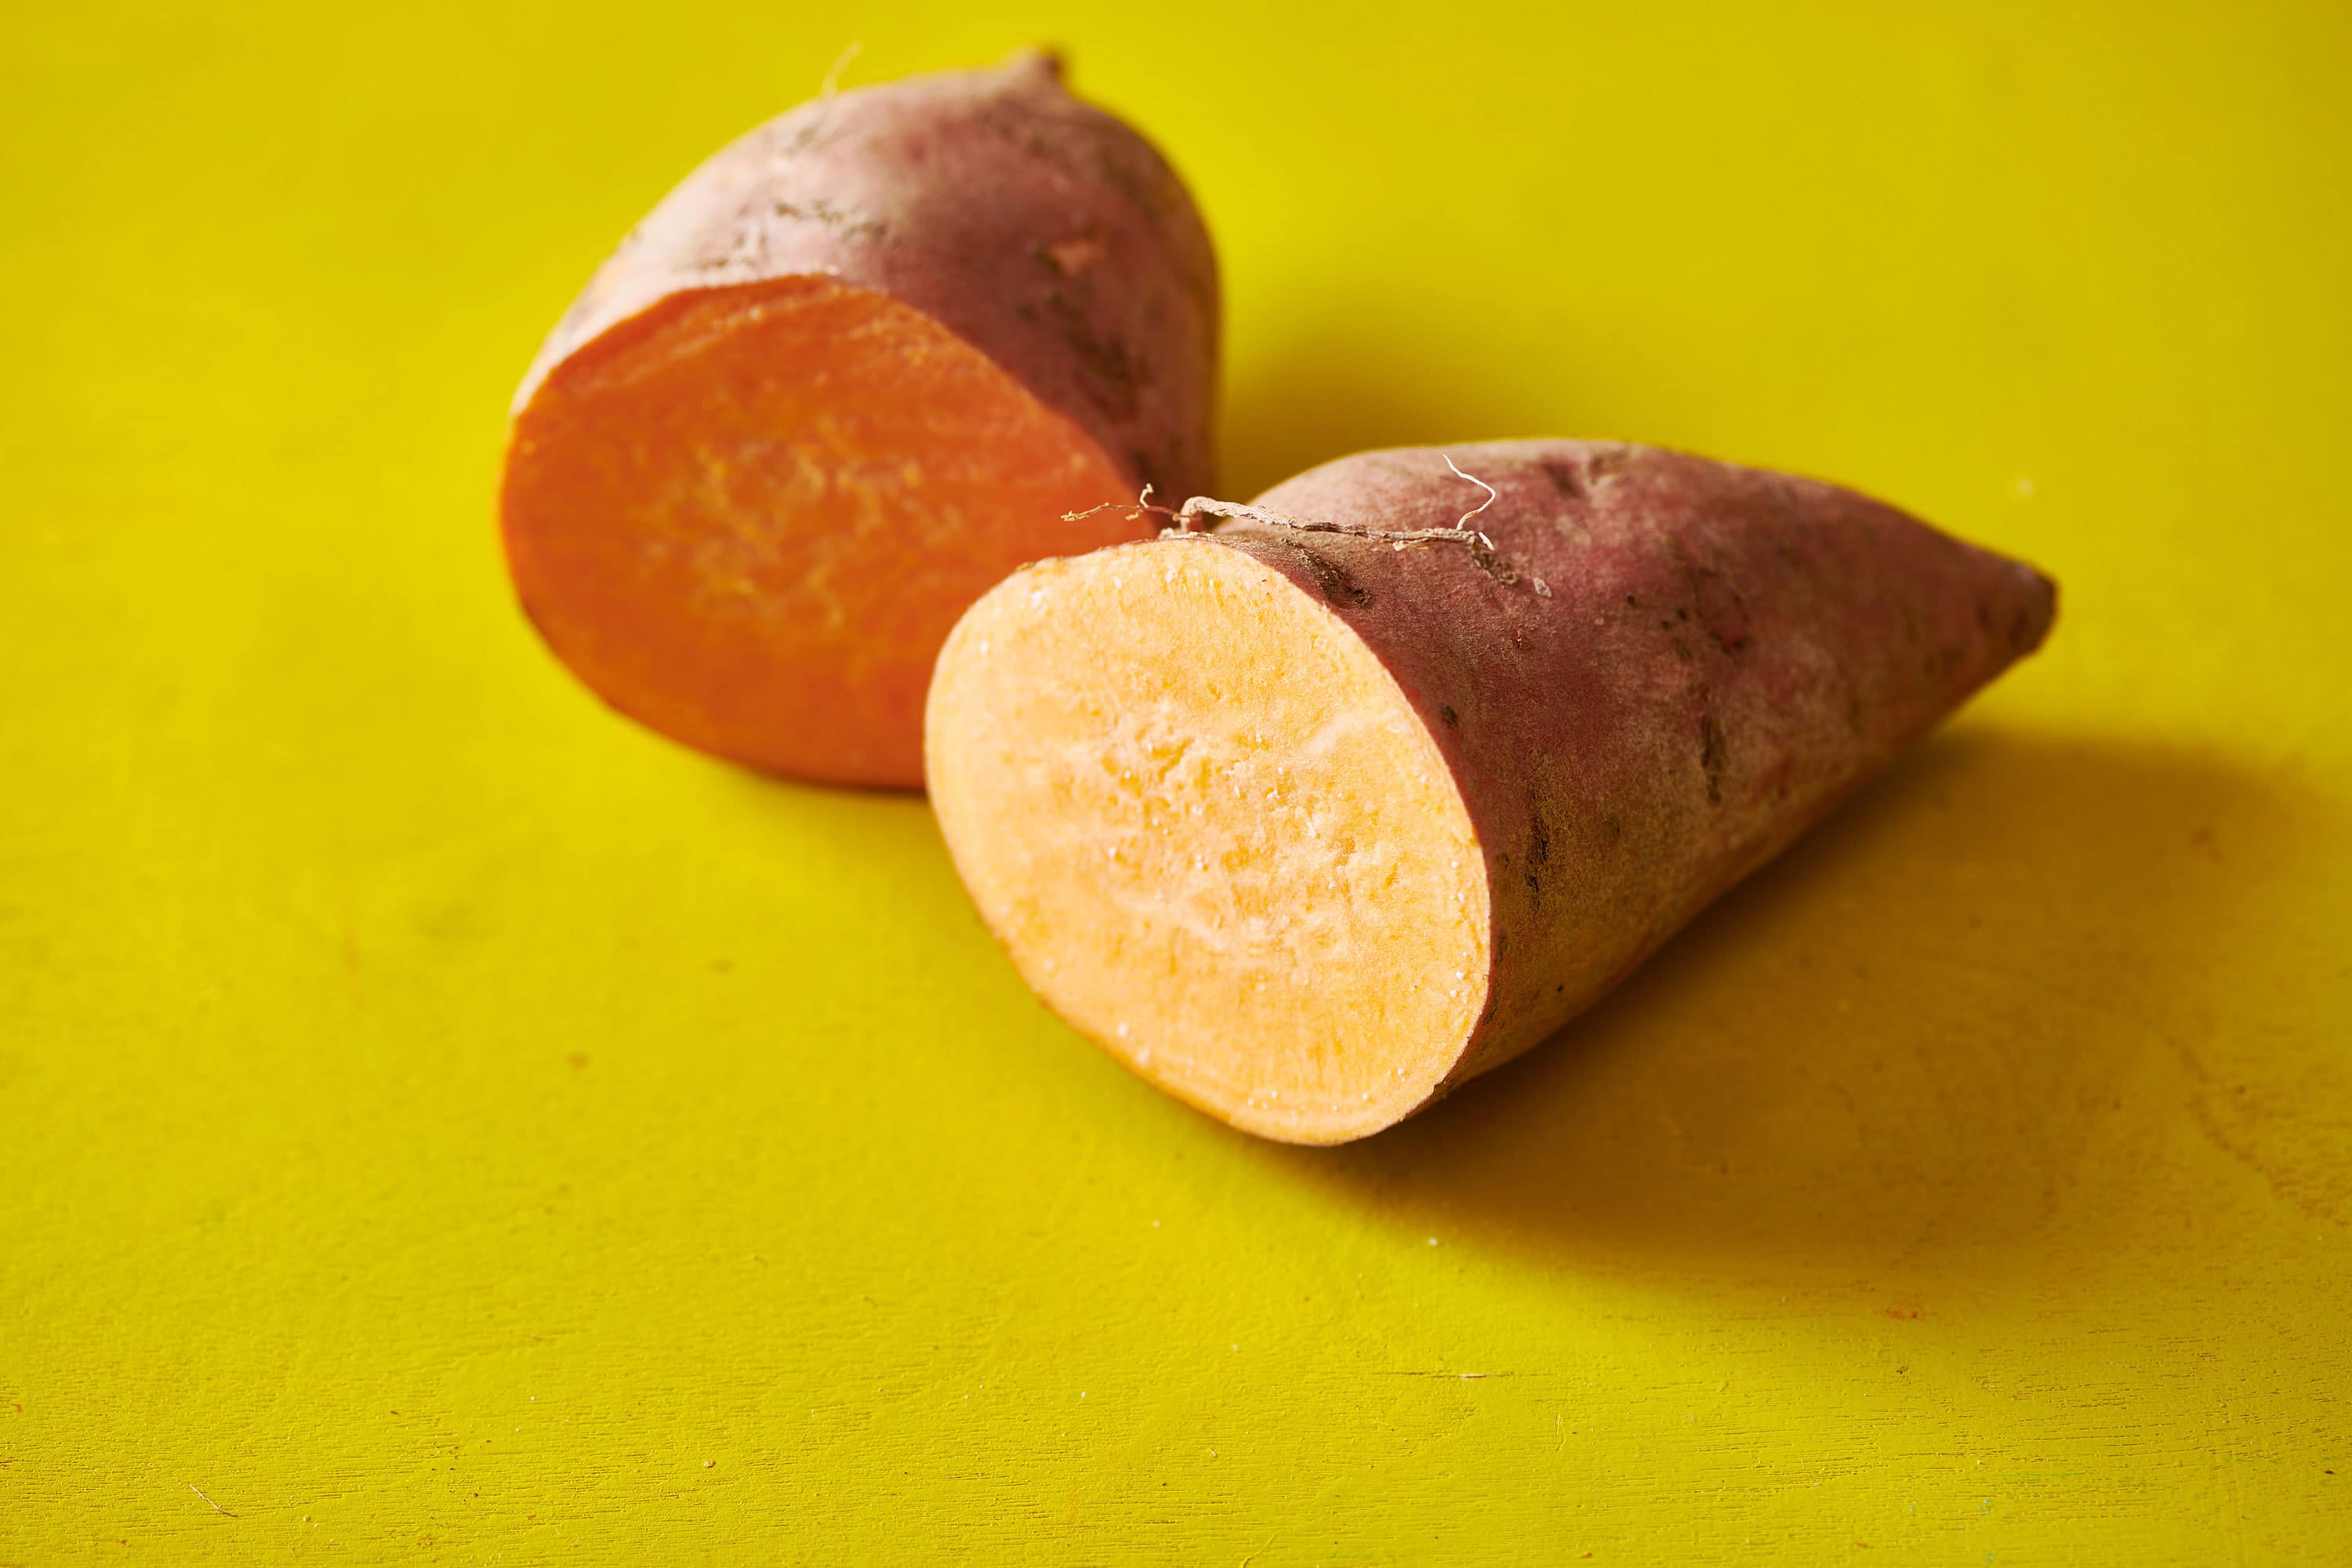 One sweet potato cut in half.